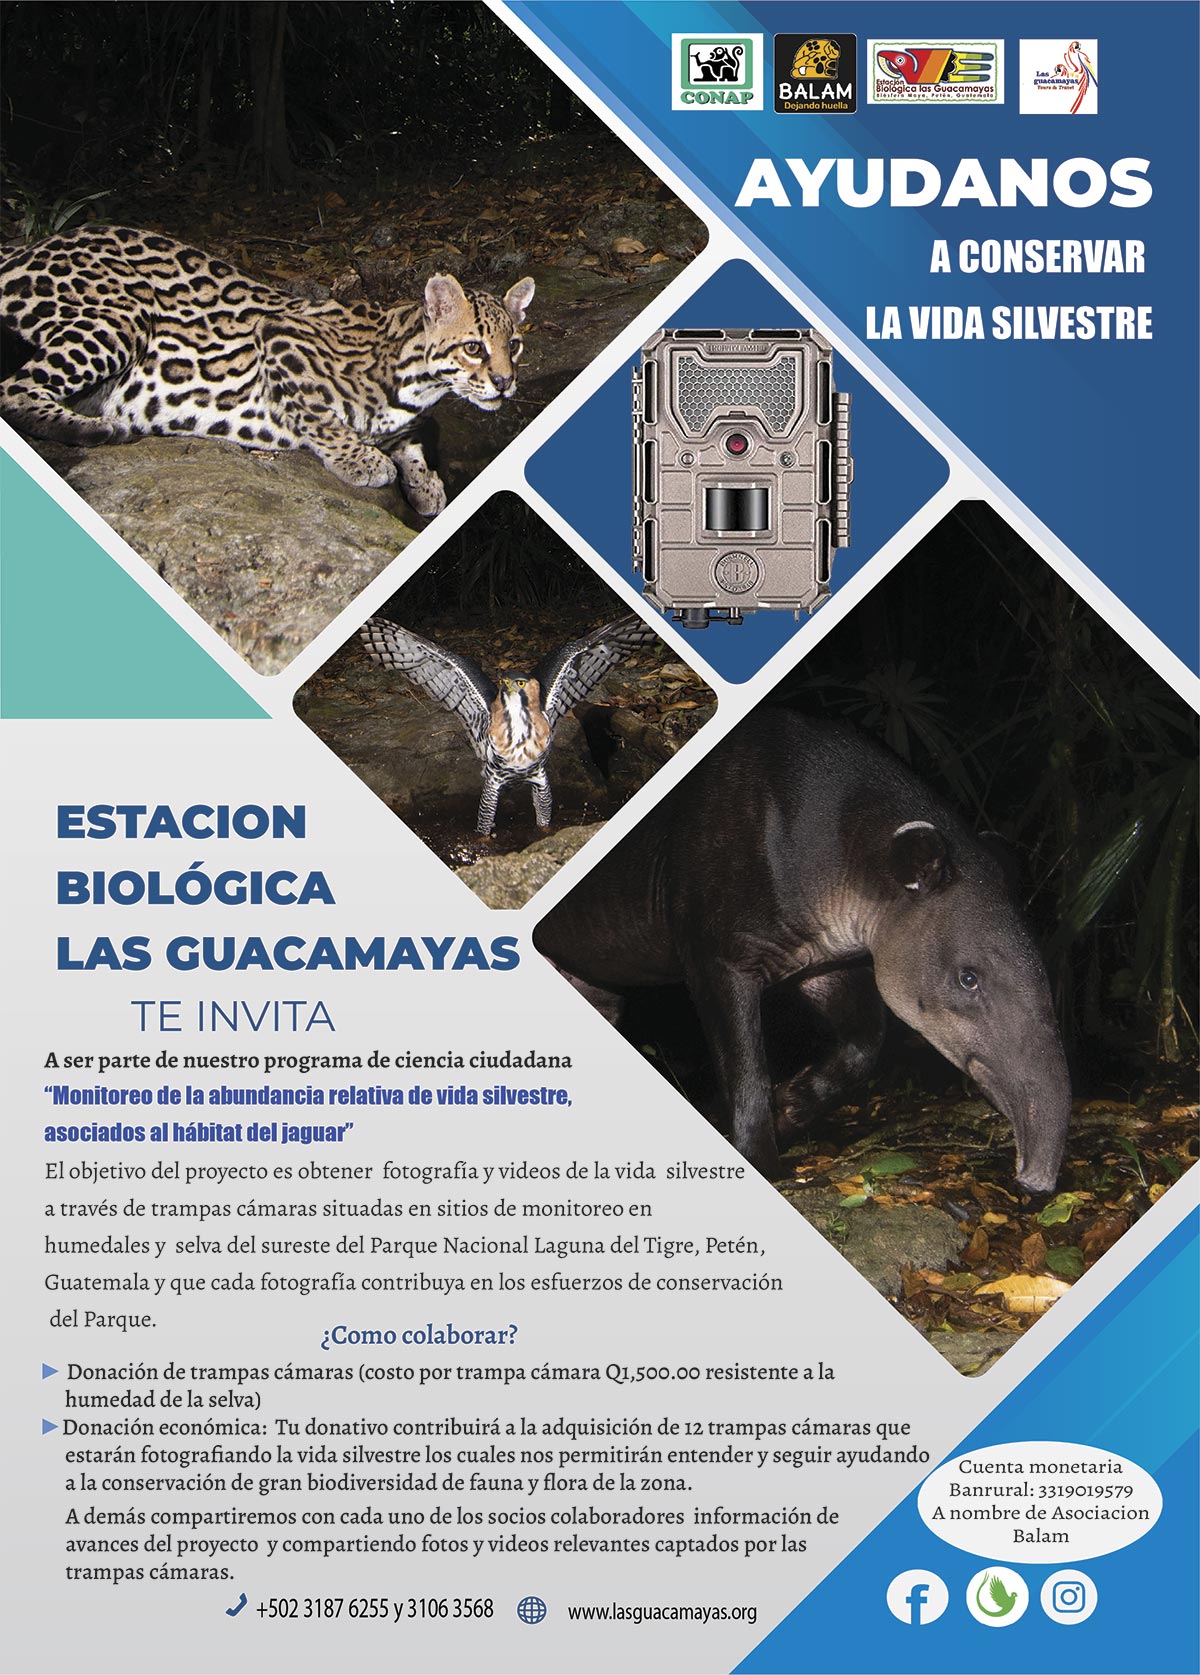 Monitoreo de vida silvestre asociaciados al habitat del jaguar